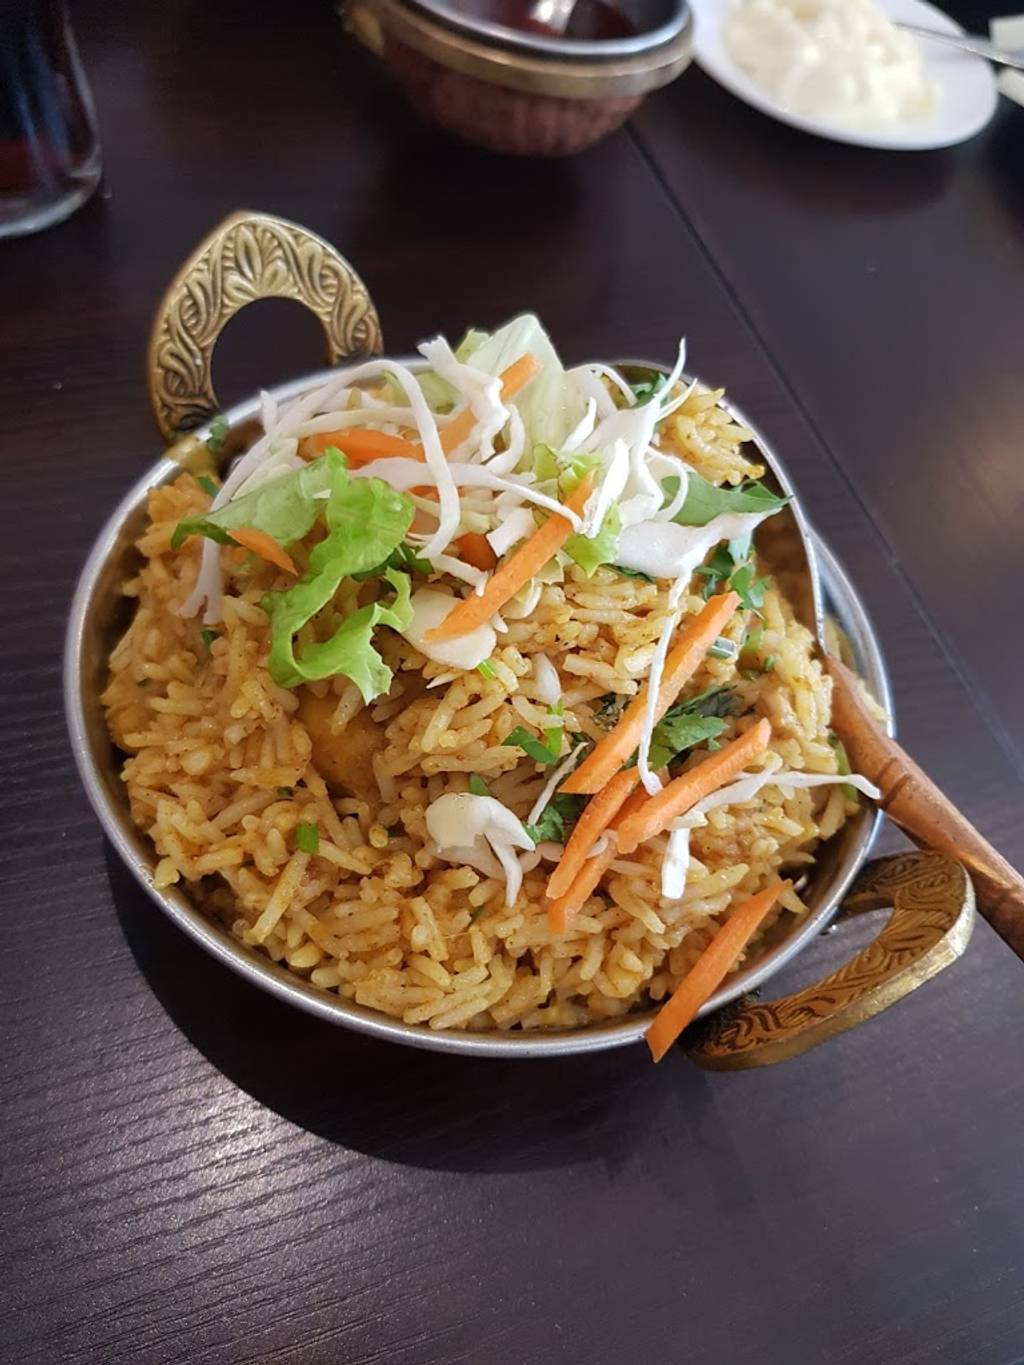 Kashmir Palace Restaurant Indien Formule à Volonté - Cormeilles-en-Parisis Indien Cormeilles-en-Parisis - Dish Food Cuisine Pad thai Ingredient